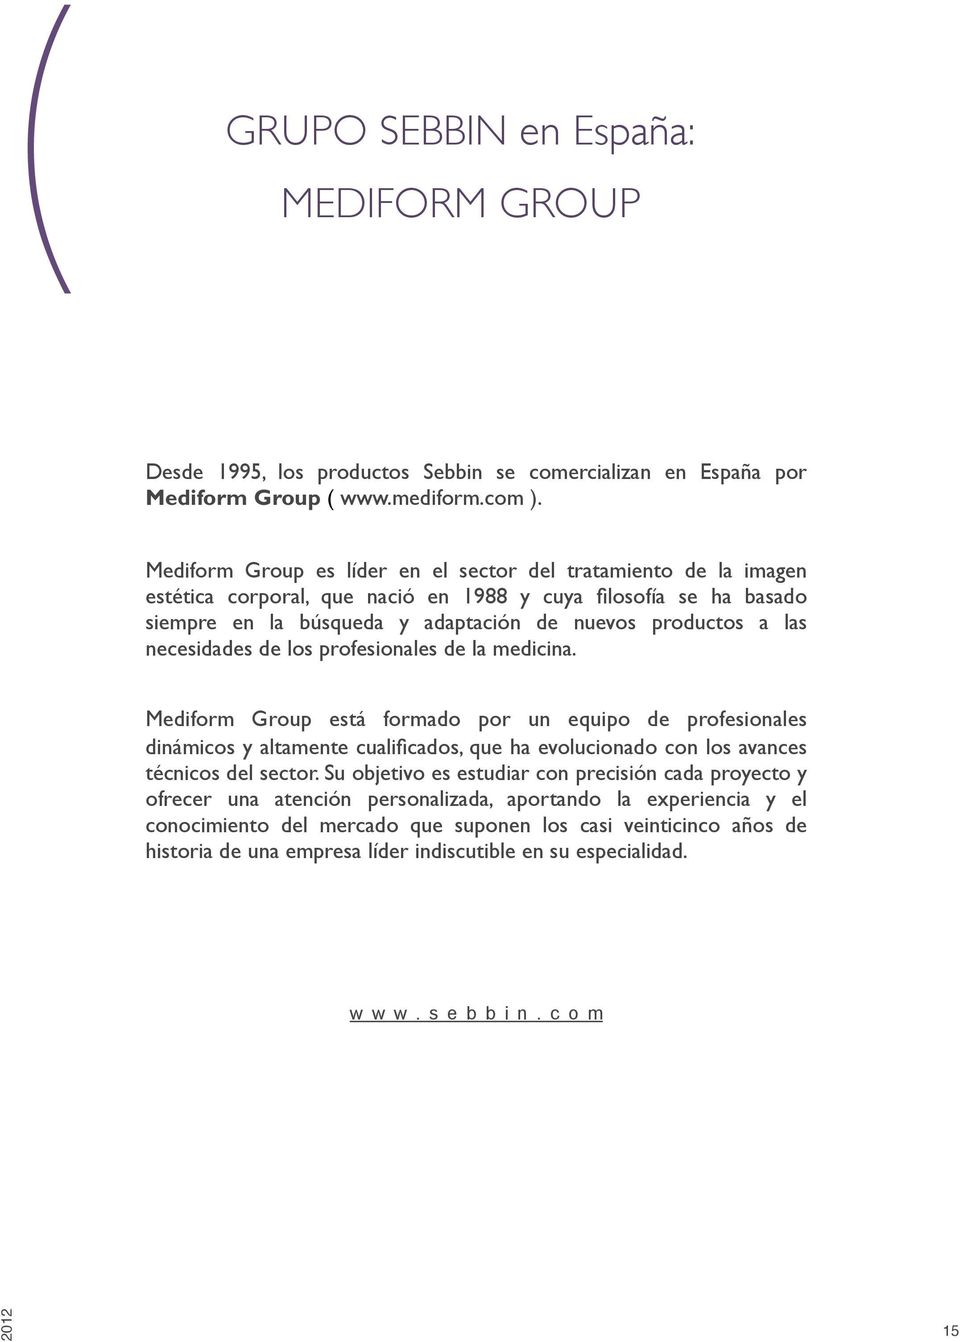 necesidades de los profesionales de la medicina. Mediform Group está formado por un equipo de profesionales dinámicos y altamente cualificados, que ha evolucionado con los avances técnicos del sector.